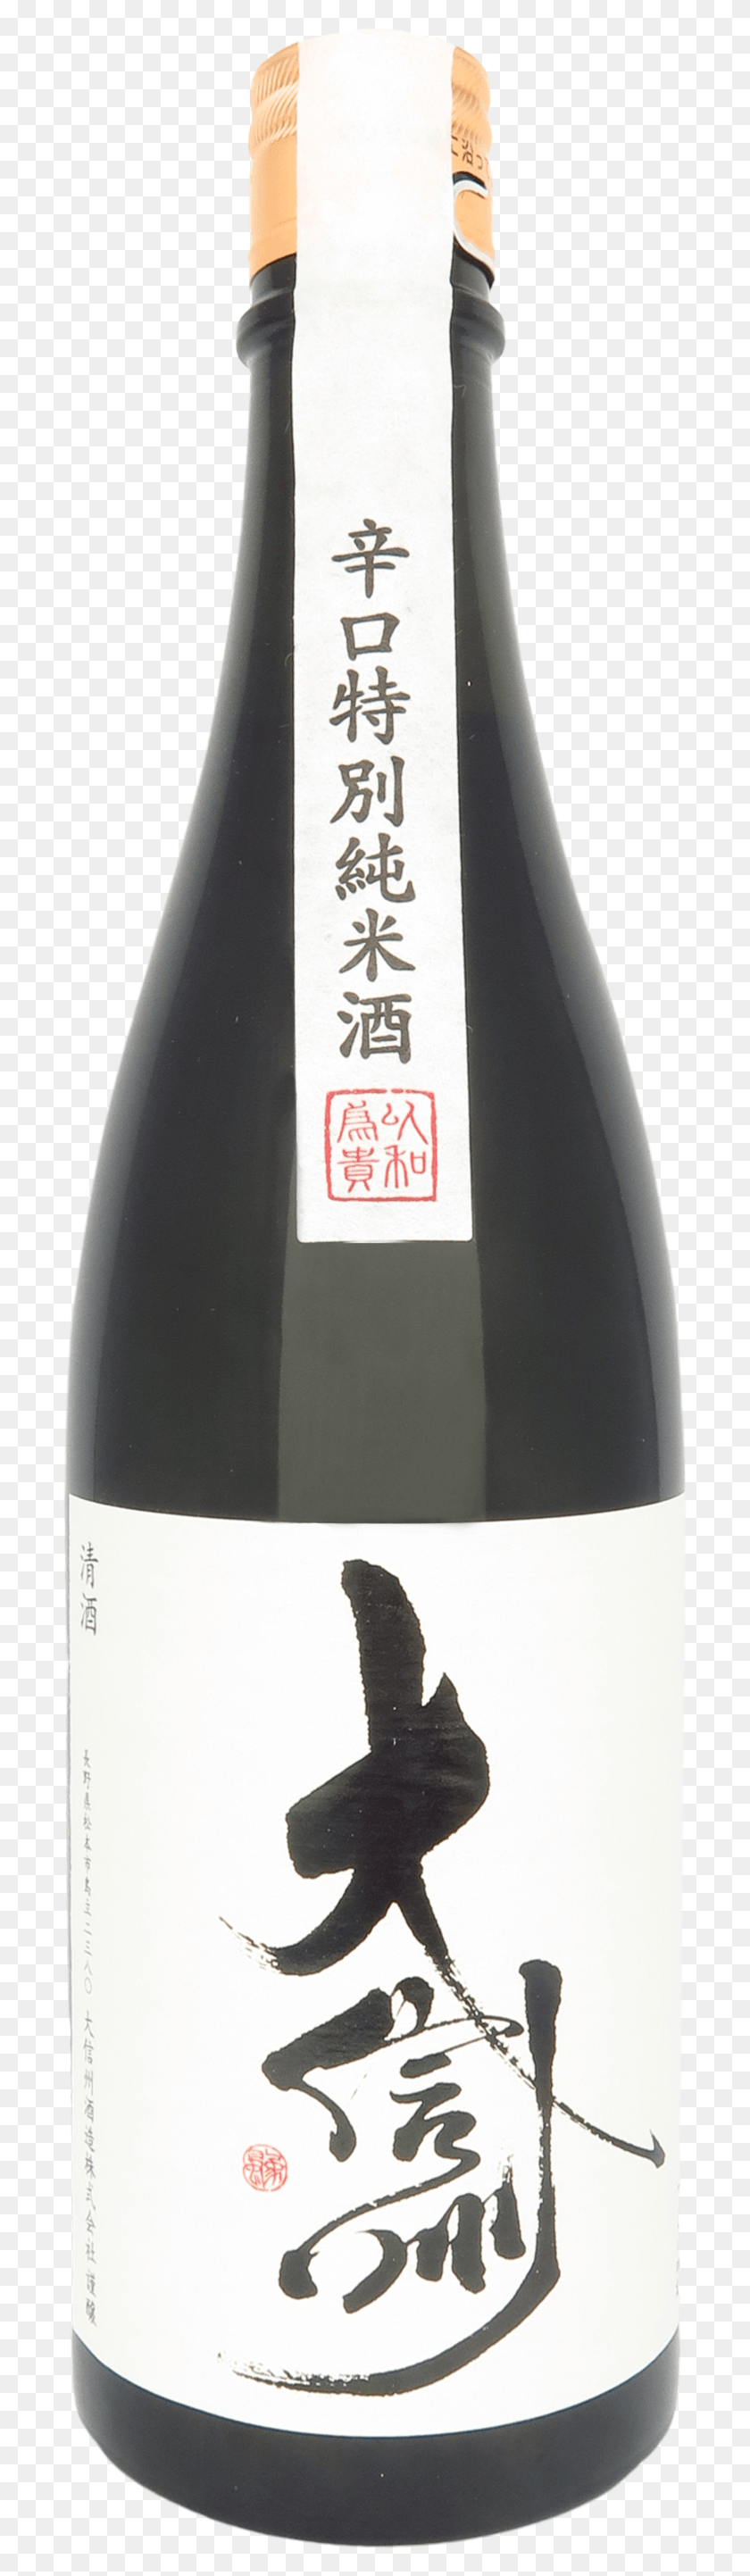 700x2825 Karakuchi Tokubetsu Junmai Sake Slip On Shoe, Label, Text, Alcohol HD PNG Download